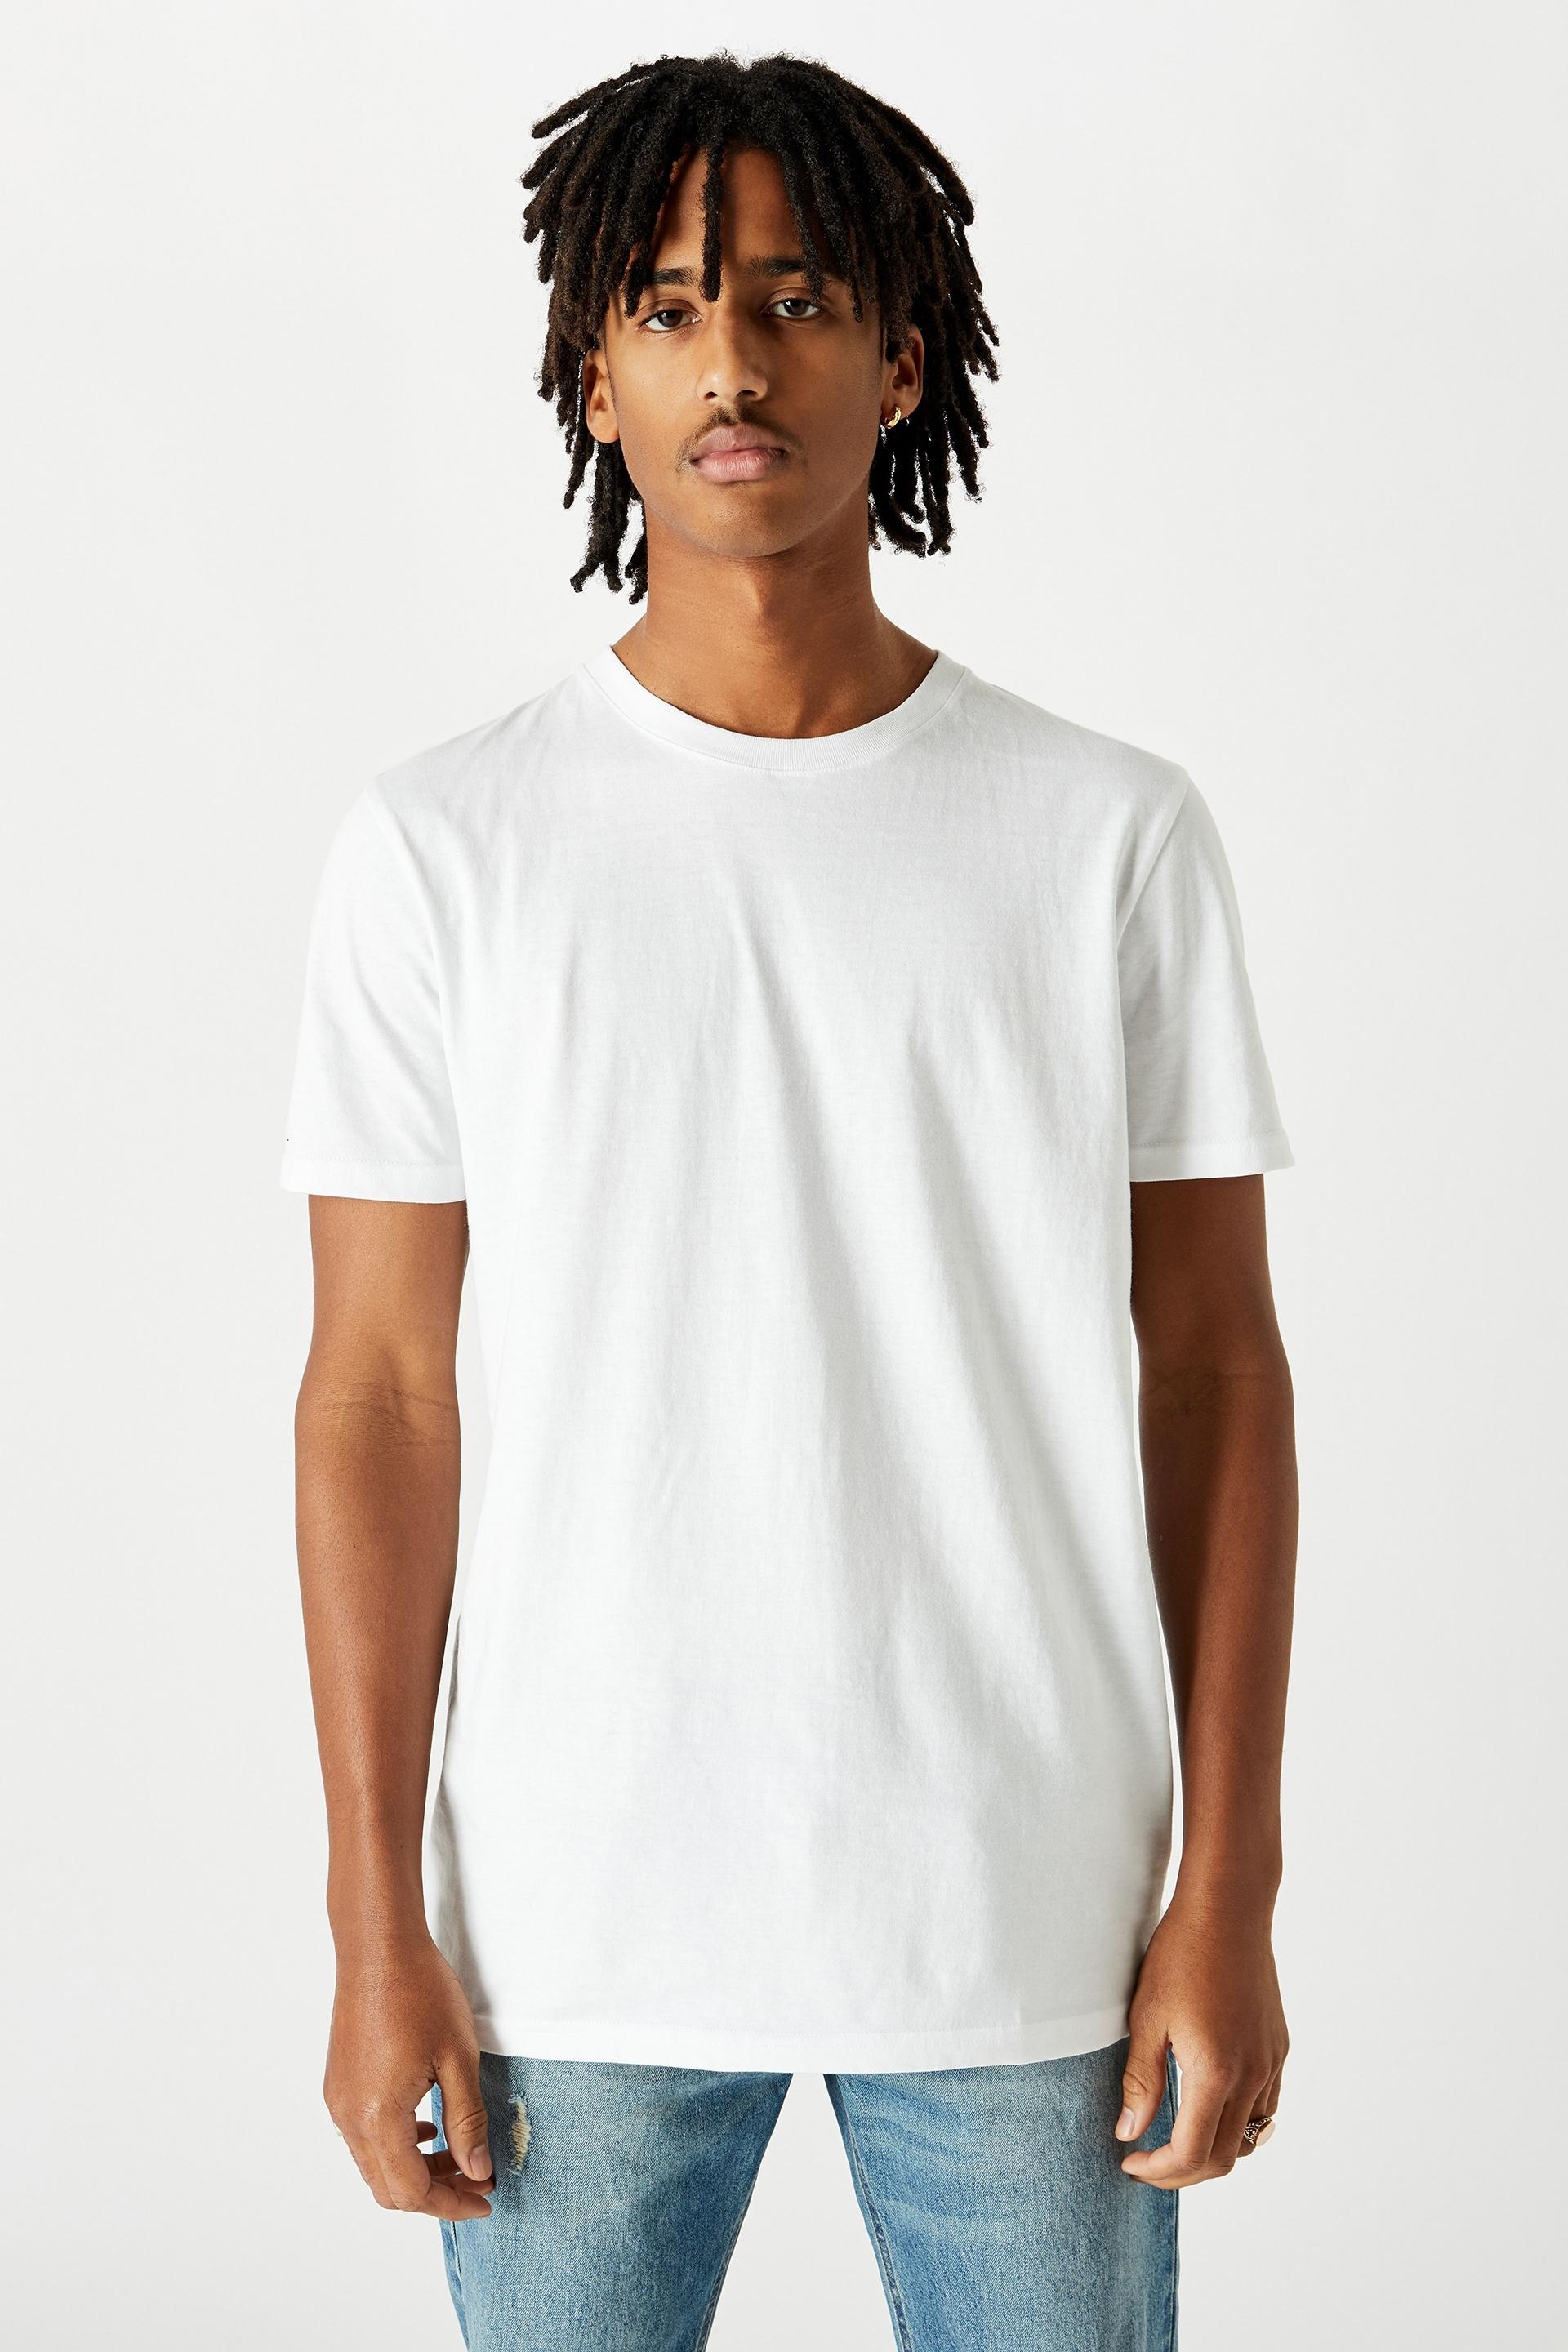 Slim t shirt - white Factorie T-Shirts & Vests | Superbalist.com